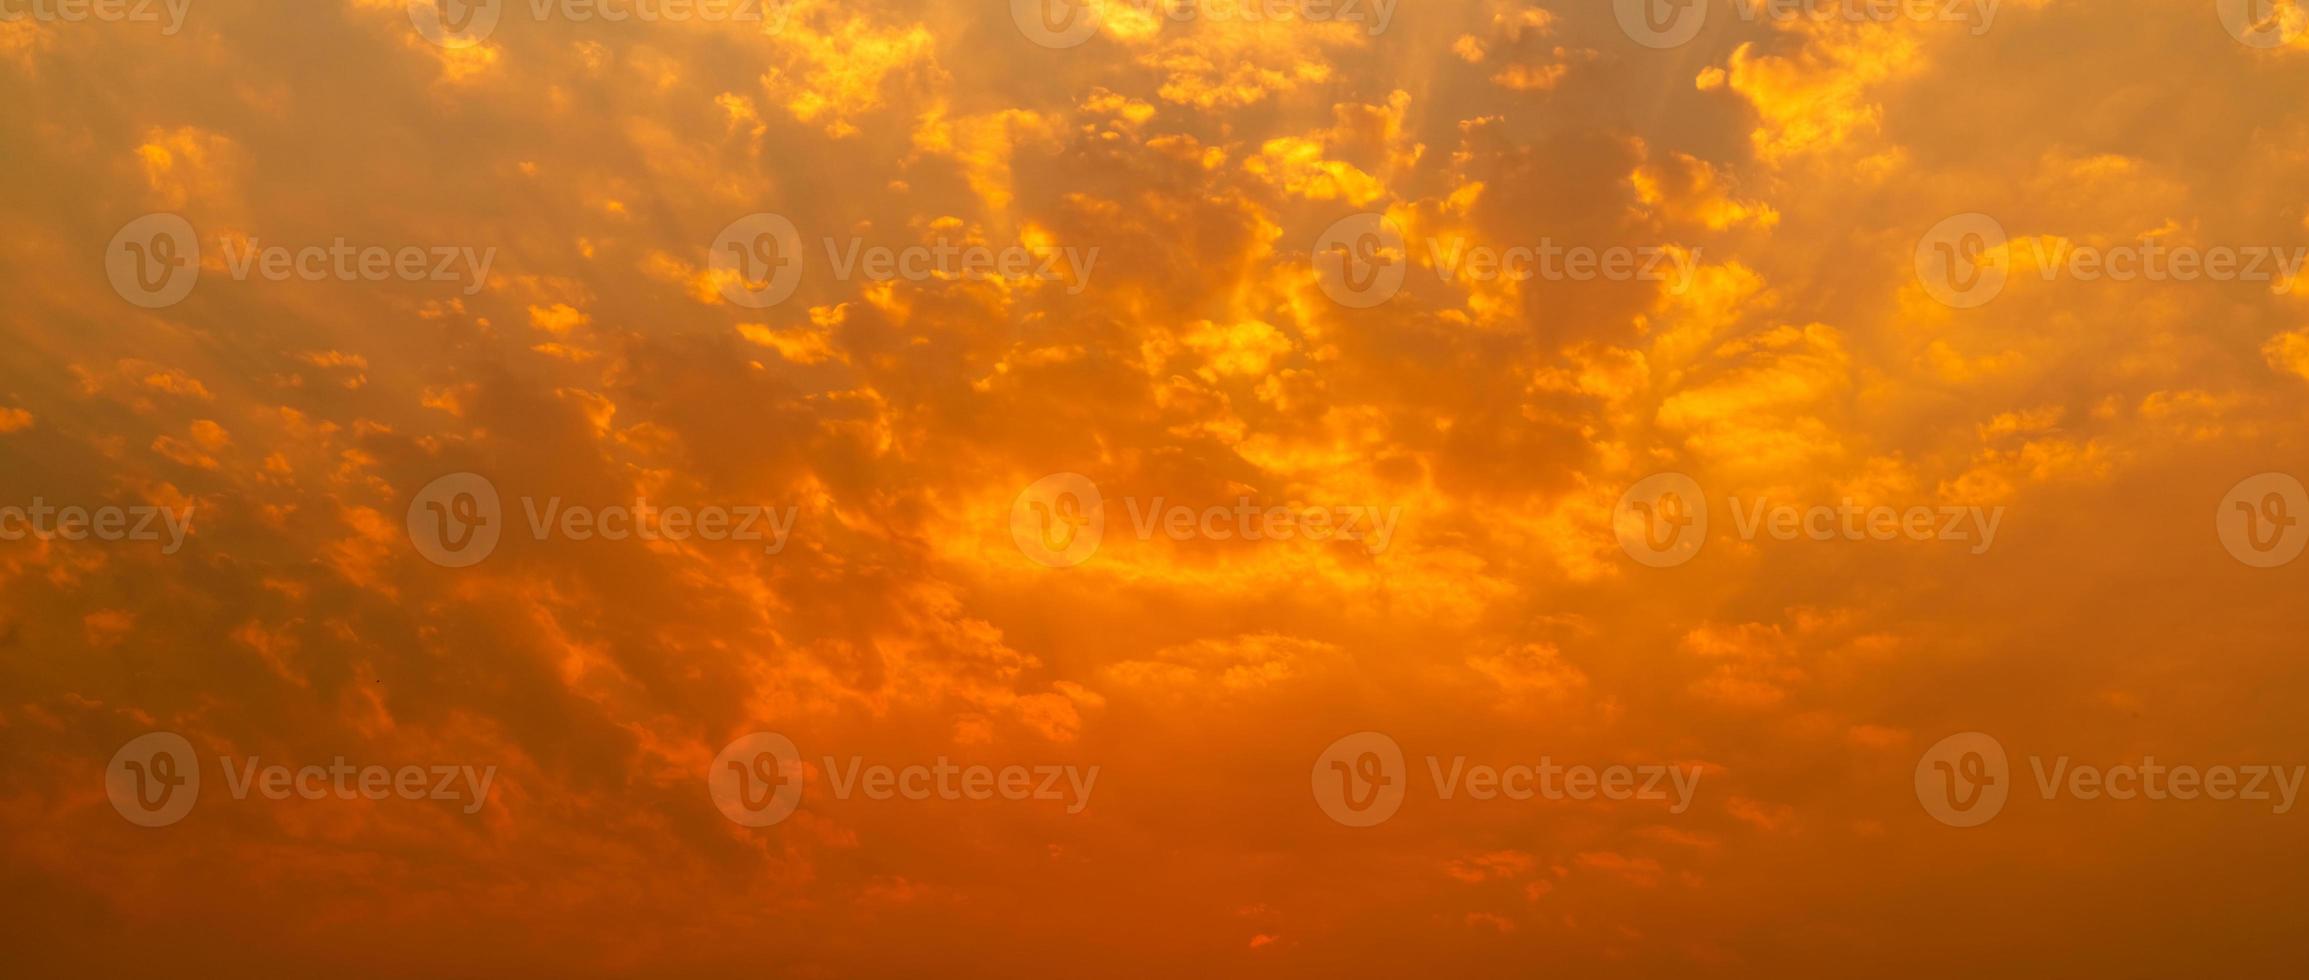 vacker solnedgångshimmel. gyllene solnedgångshimmel med vackra mönster av moln. orange, gula och röda moln på kvällen. frihet och lugn bakgrund. skönheten i naturen. kraftfull och andlig scen. foto